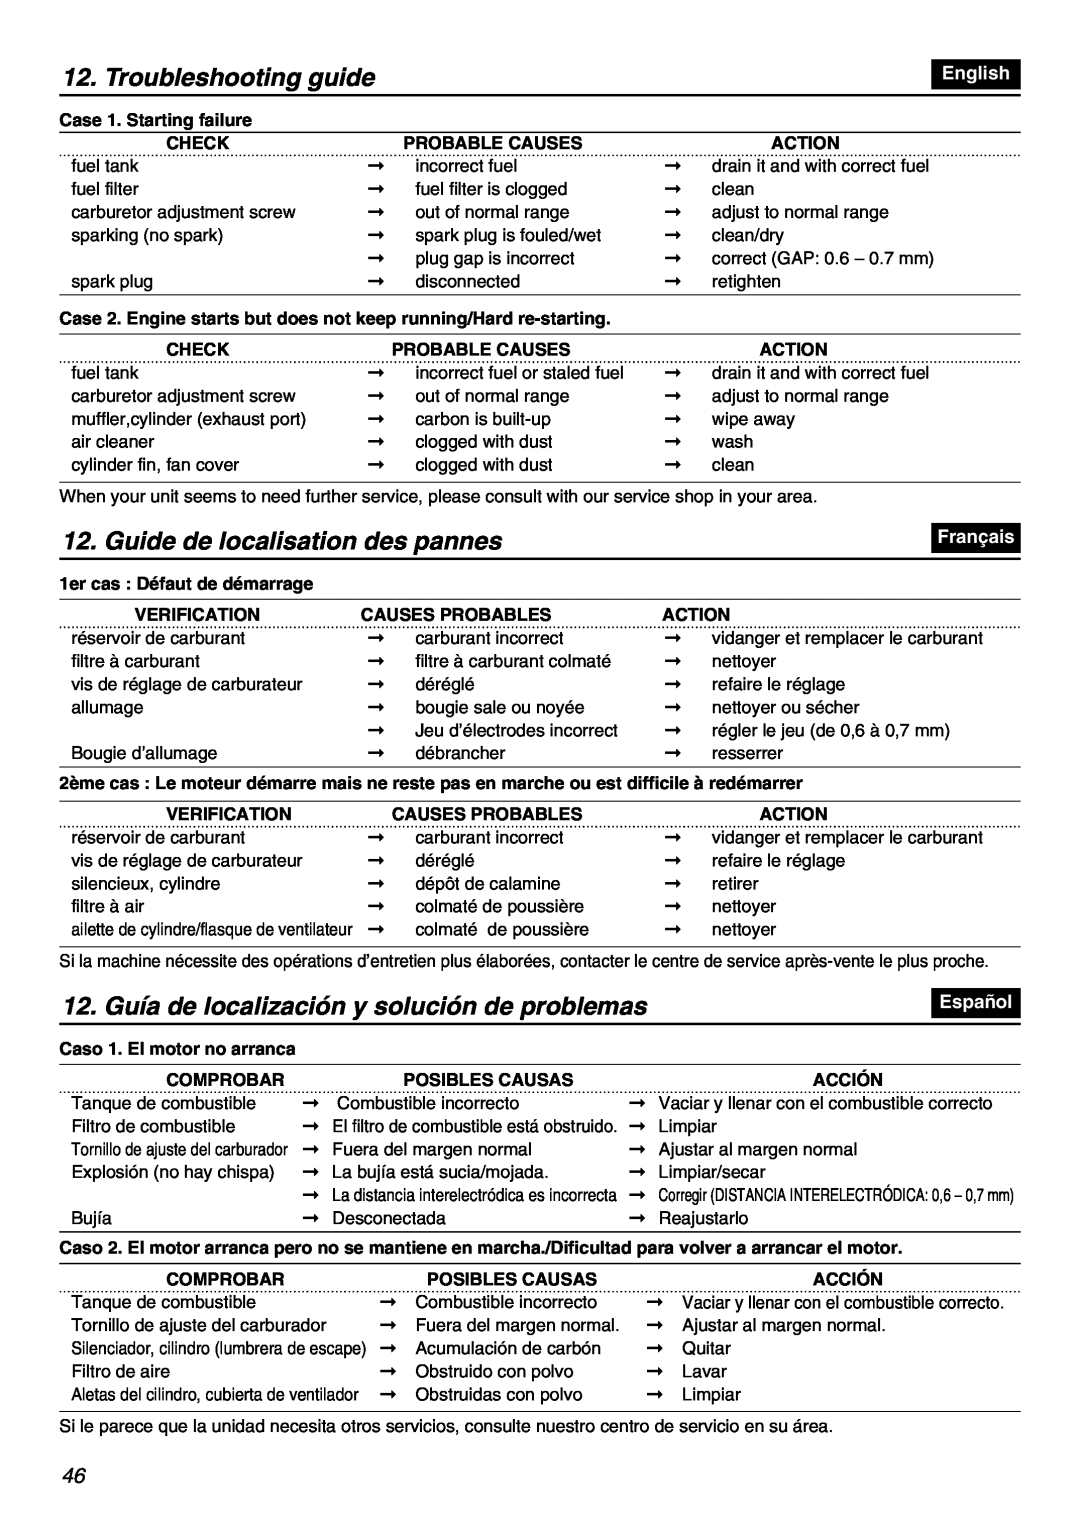 RedMax EBZ7100-CA, EBZ7100RH-CA manual Troubleshooting guide, Guide de localisation des pannes, English, Français, Español 